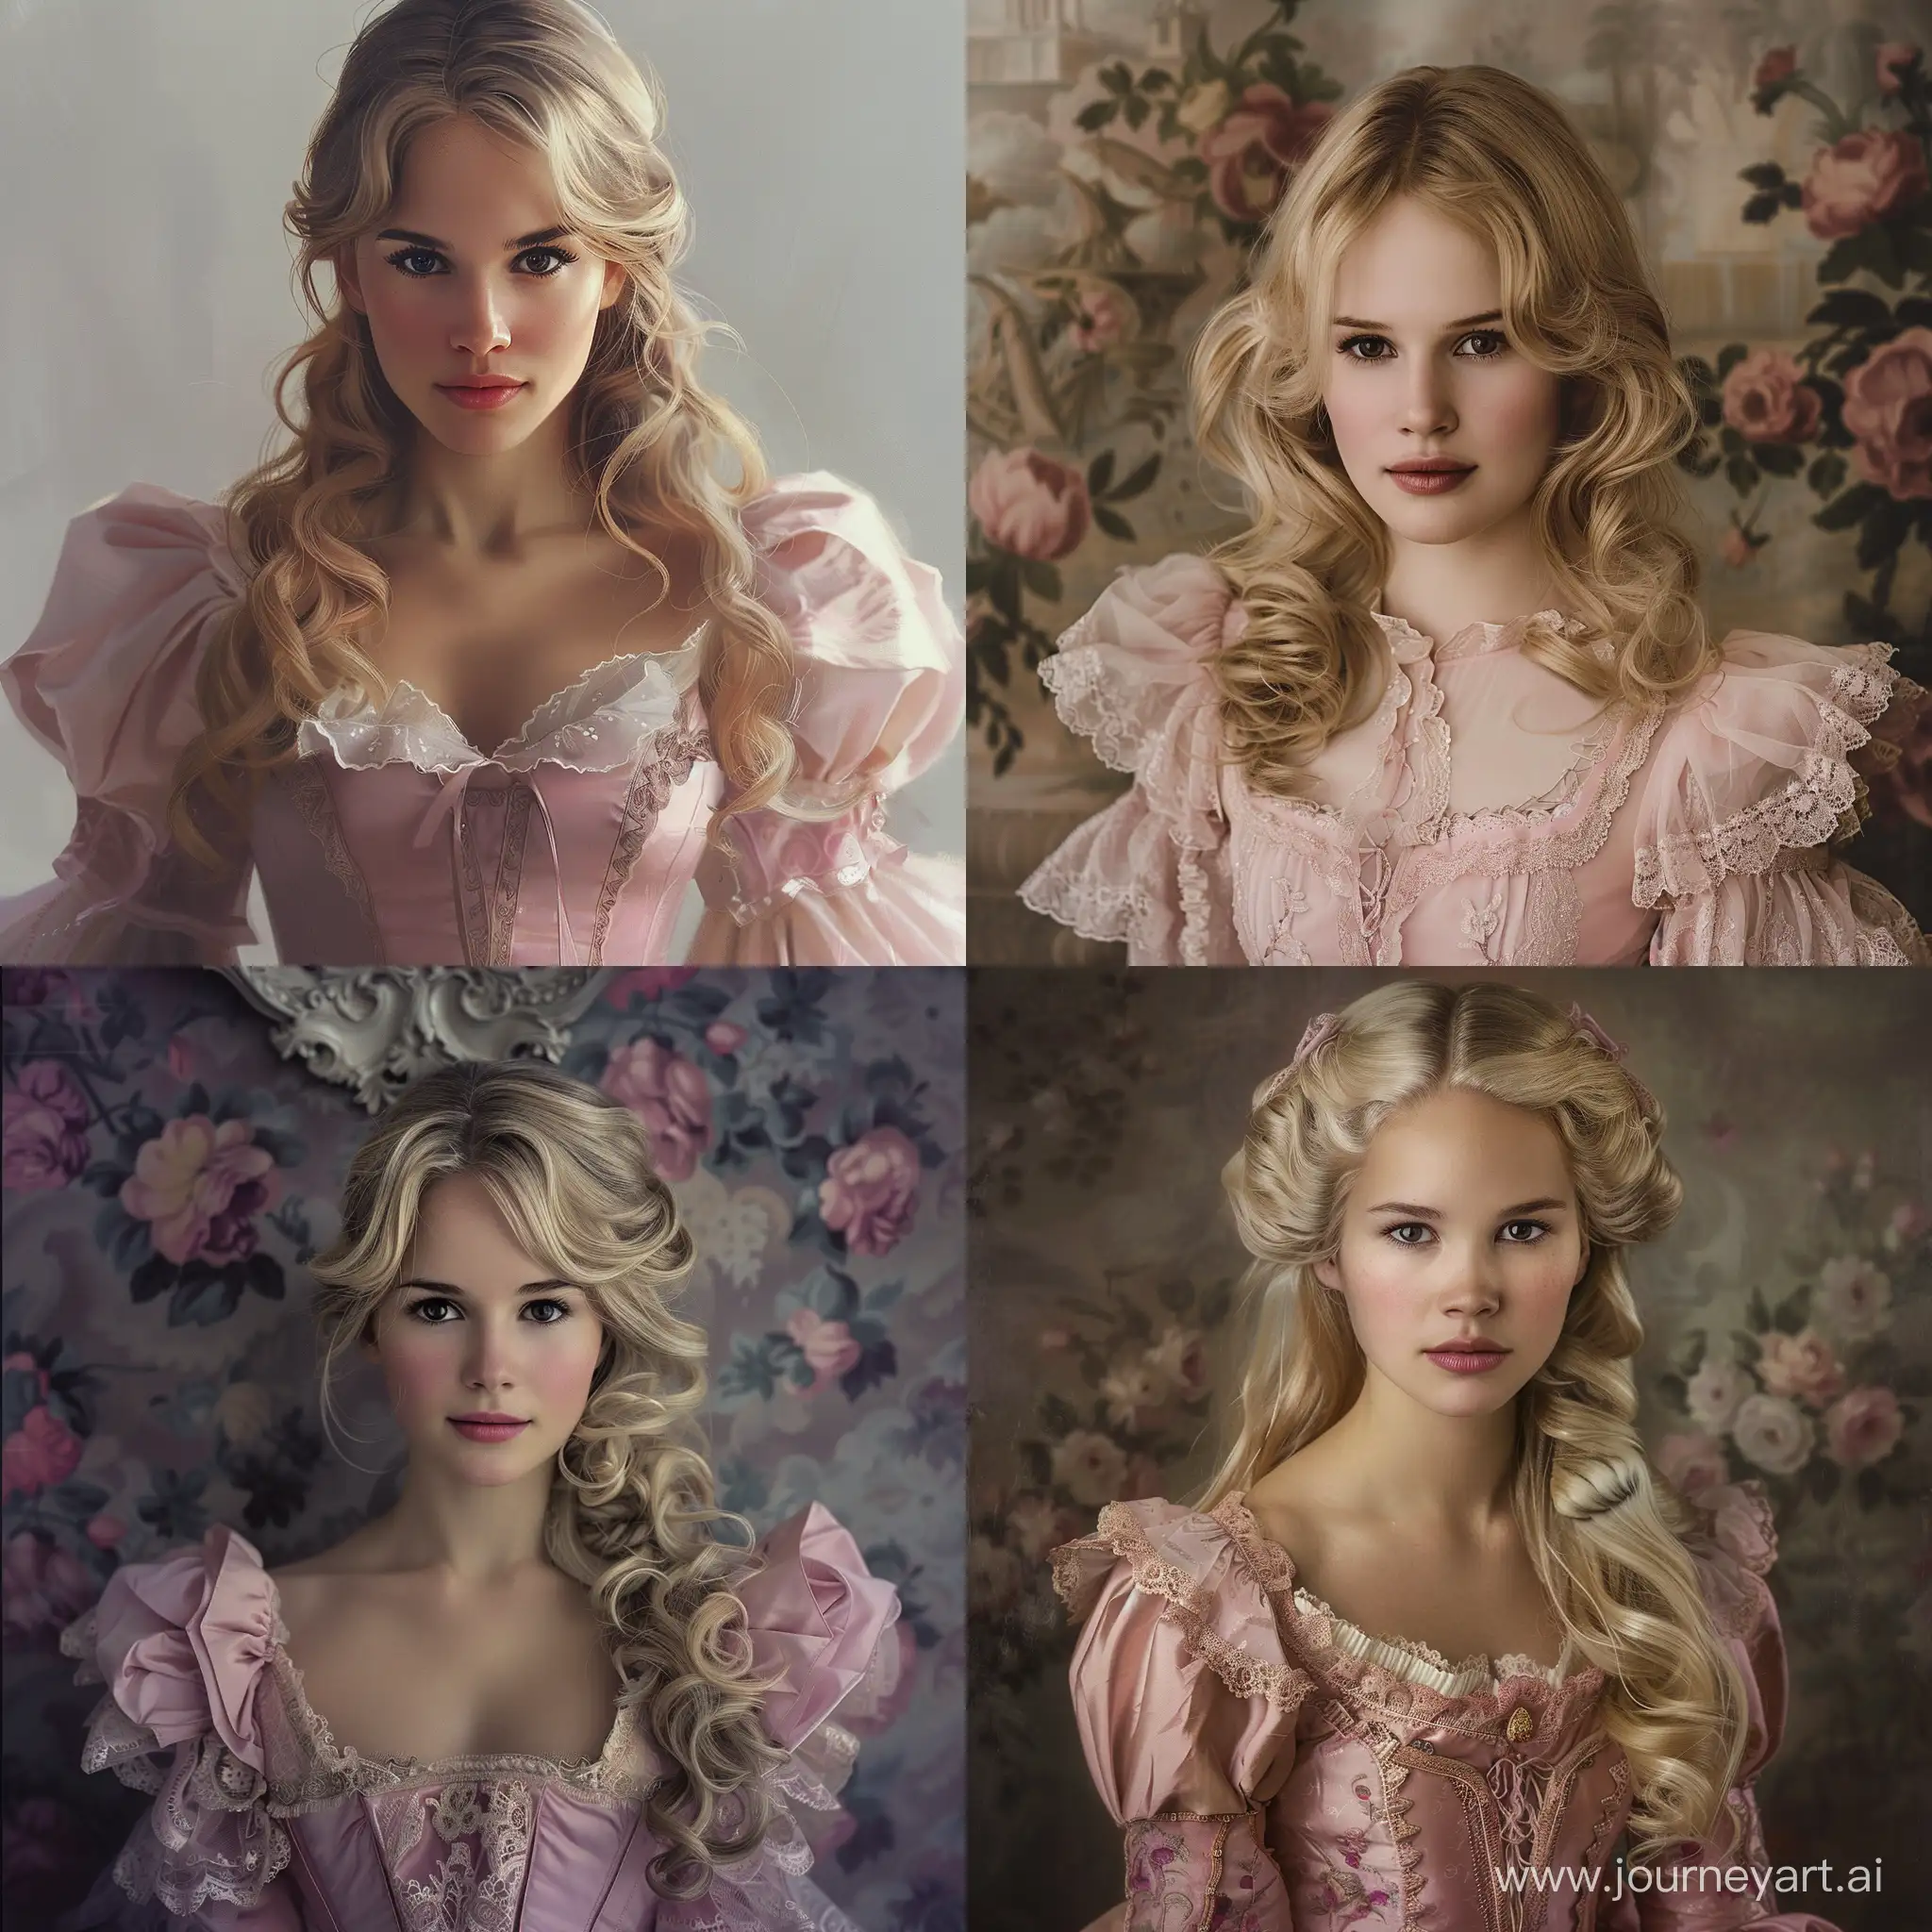 Девушка, похожая на Алисию Викандер. С русыми волосами до плеч, темными миндалевидными глазами, пухлыми губами. В бальном платье 19 века розового цвета